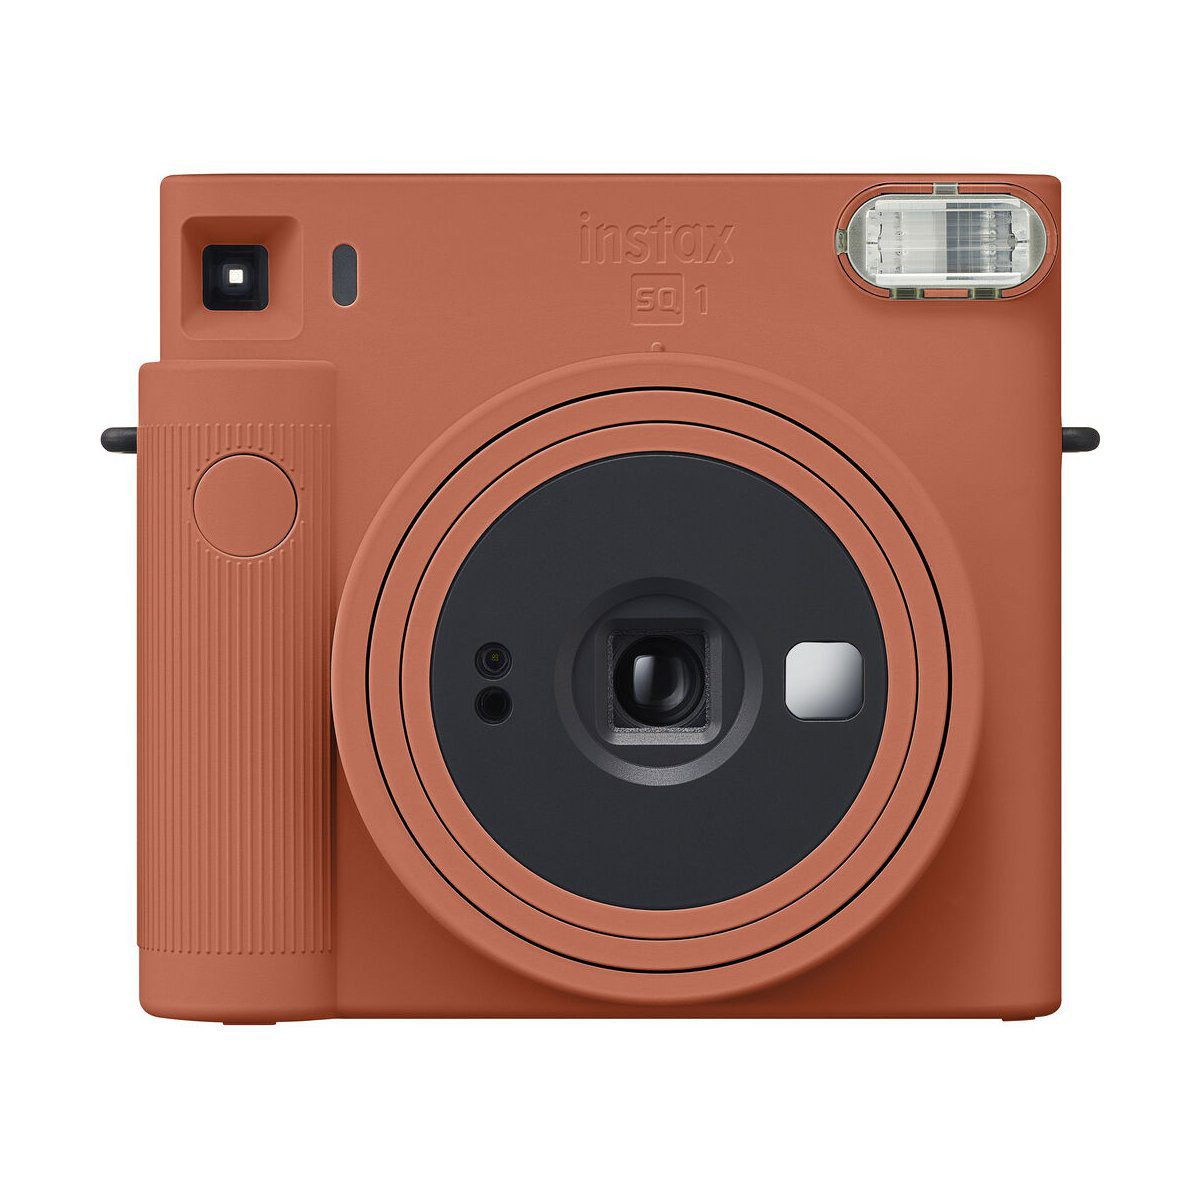 Fujifilm Instax Square SQ1 Instant Camera Terracotta Orange